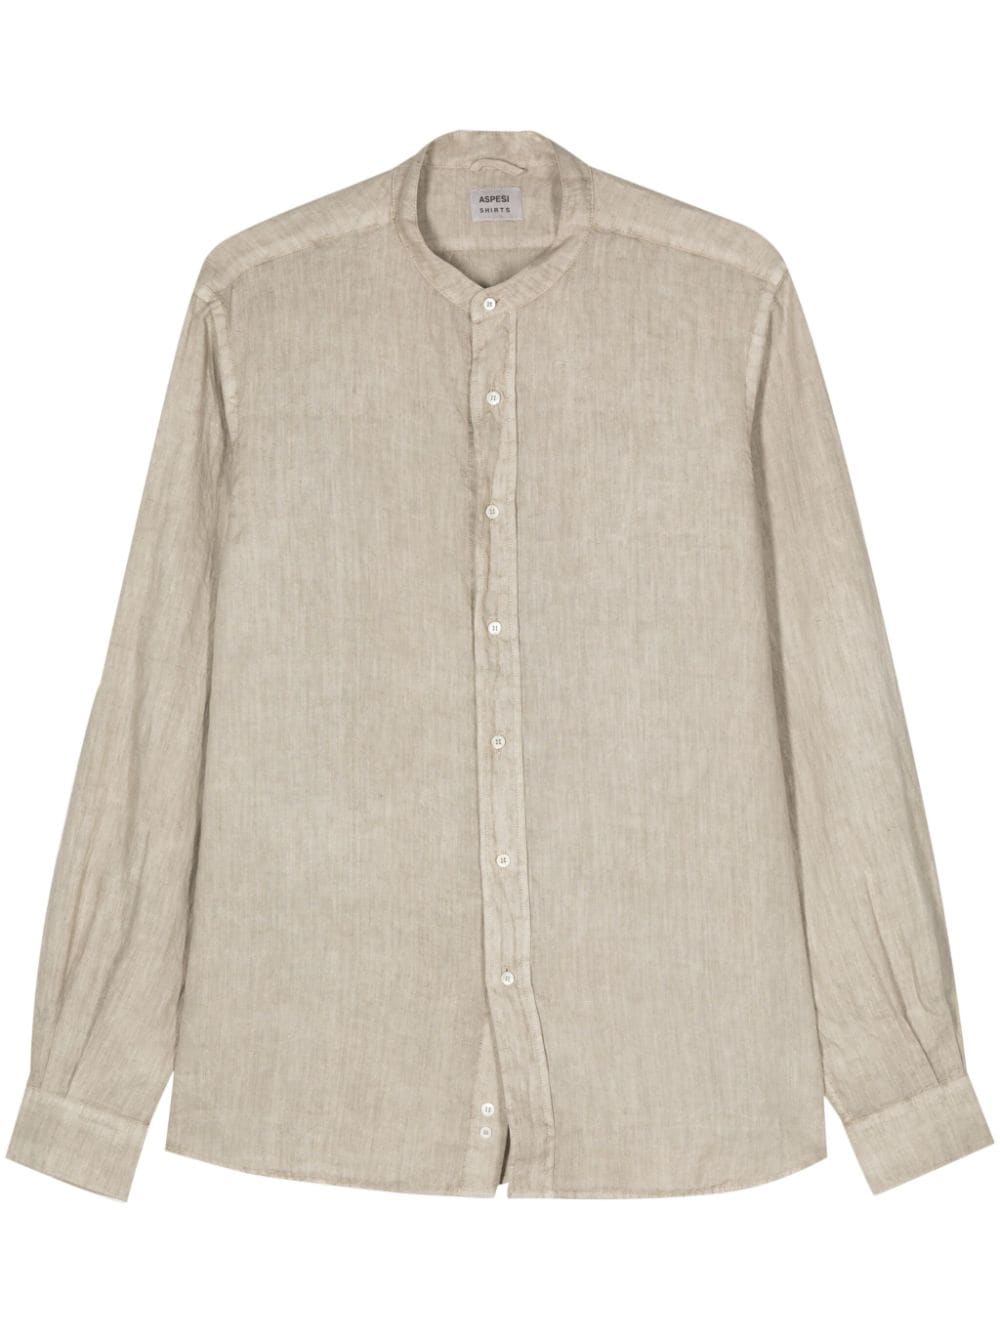 Aspesi Long-sleeve Linen Shirt In Neutrals